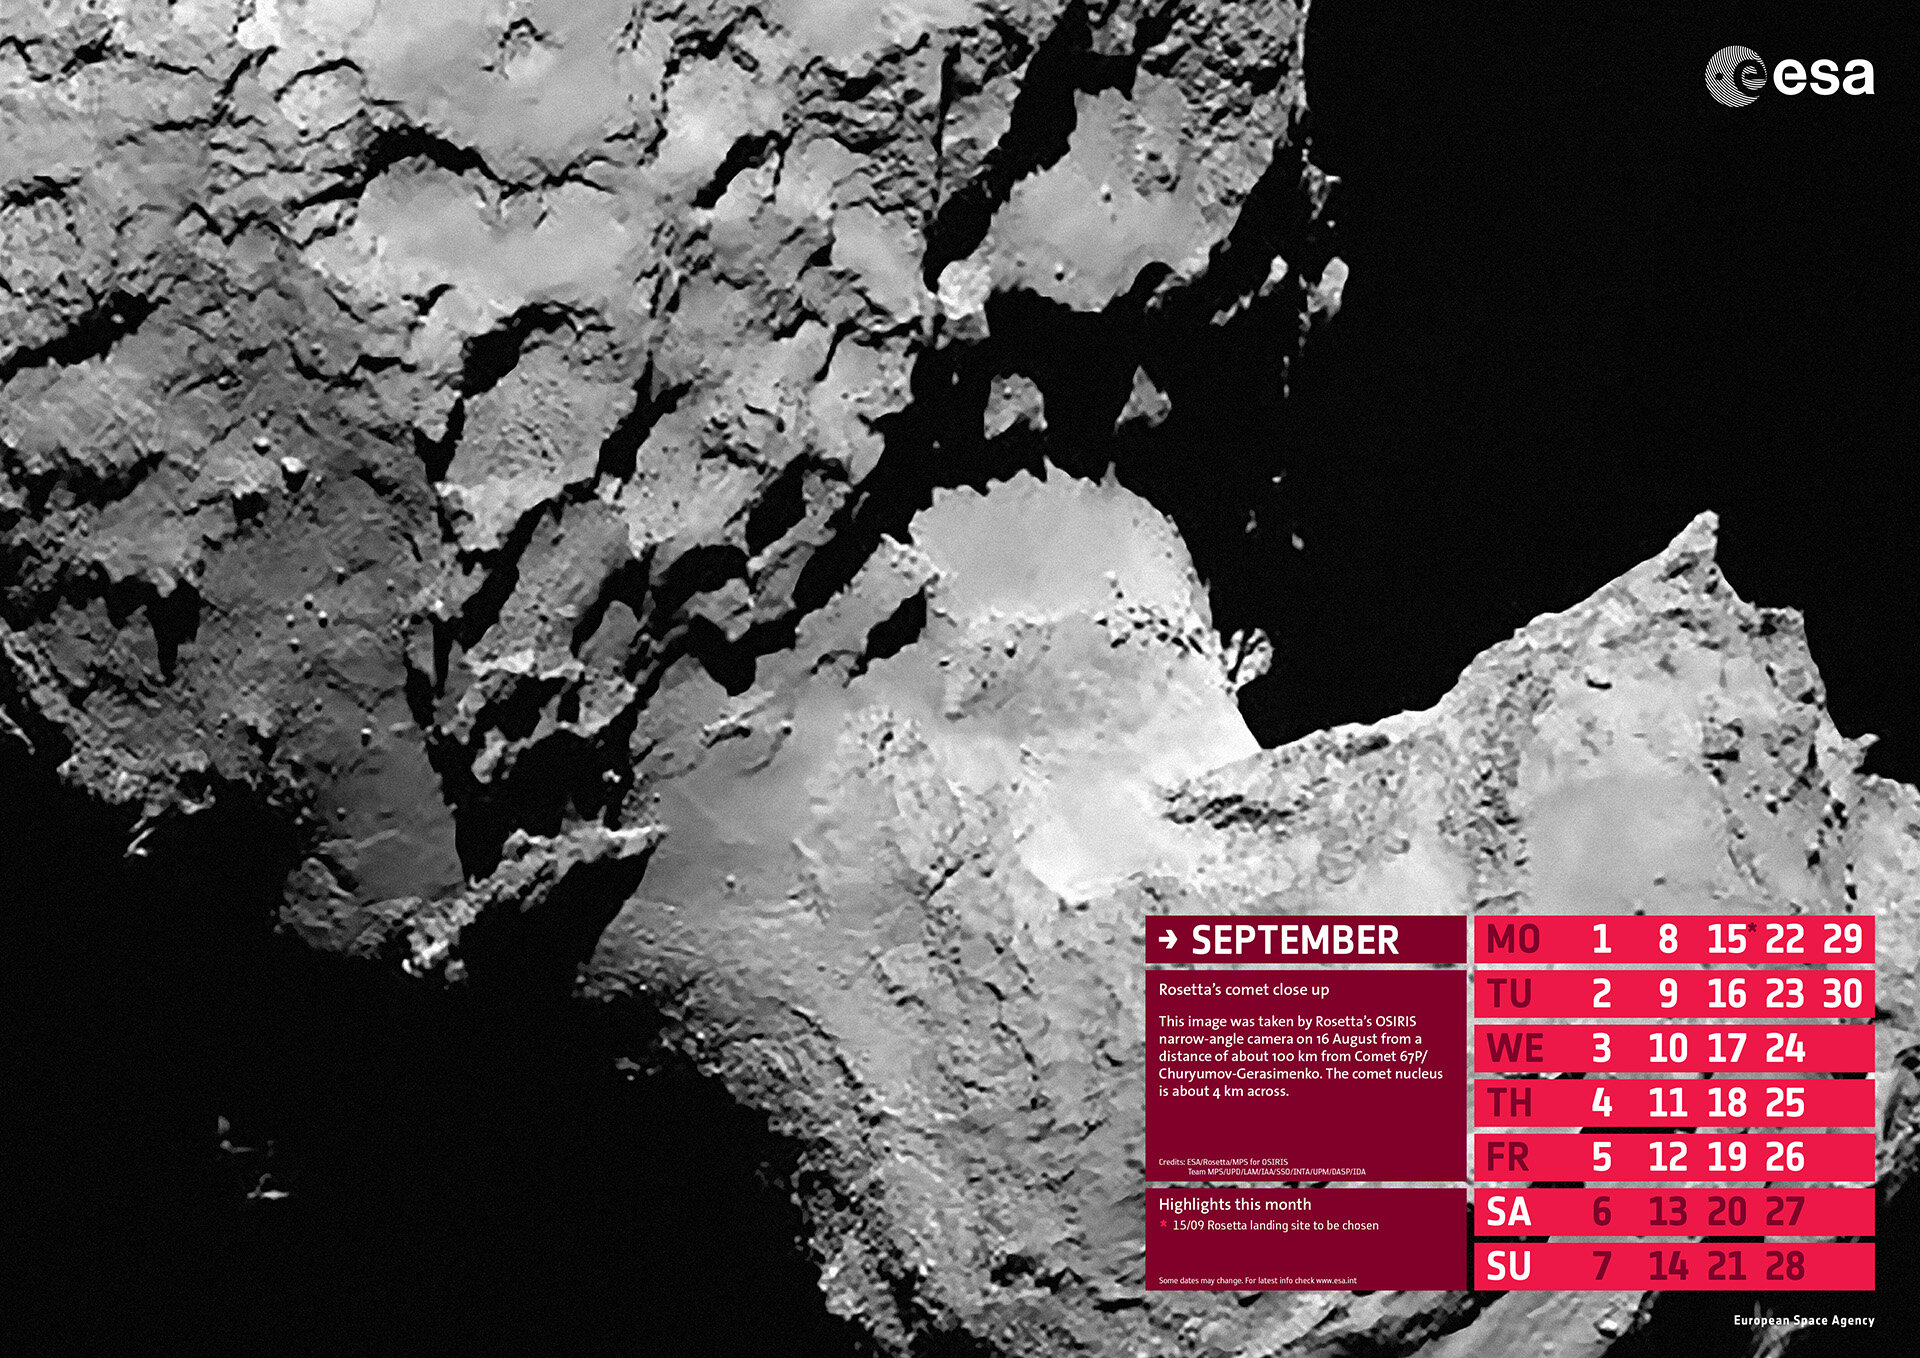 Rosetta’s comet close up